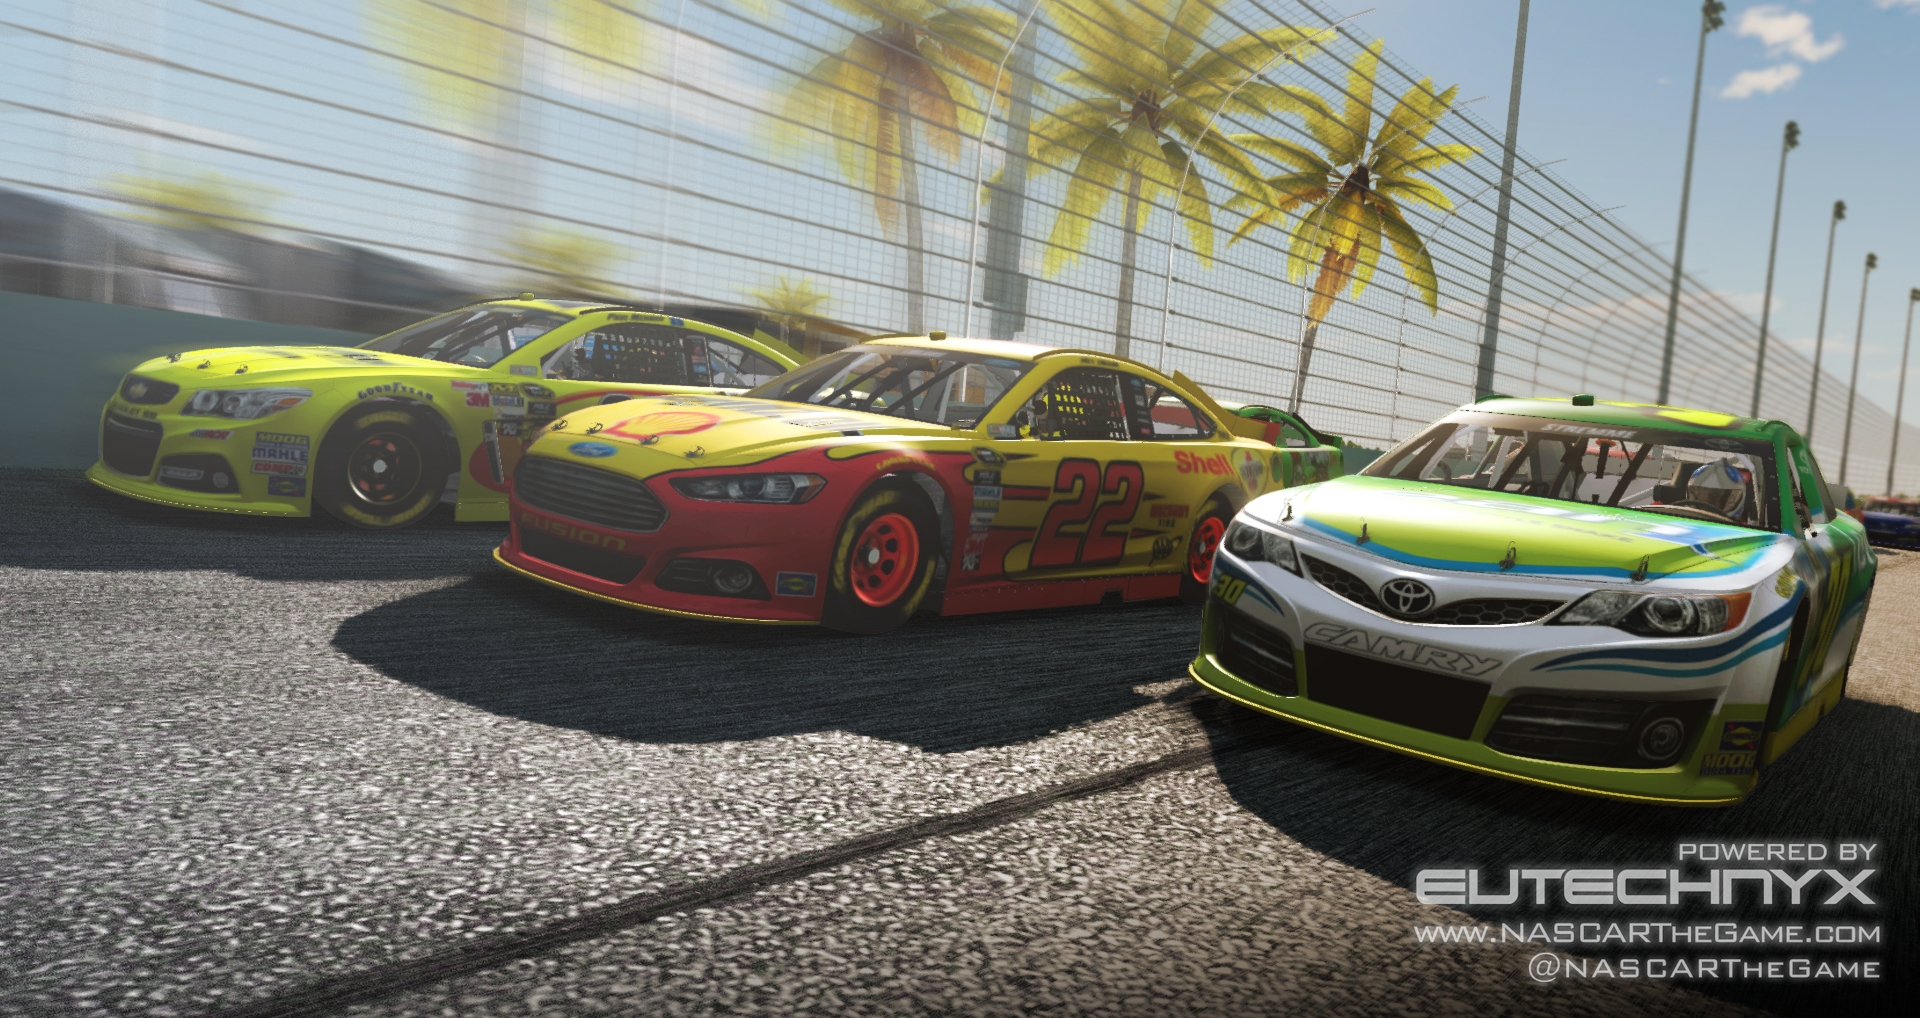 Скриншот из игры NASCAR: The Game 2013 под номером 13